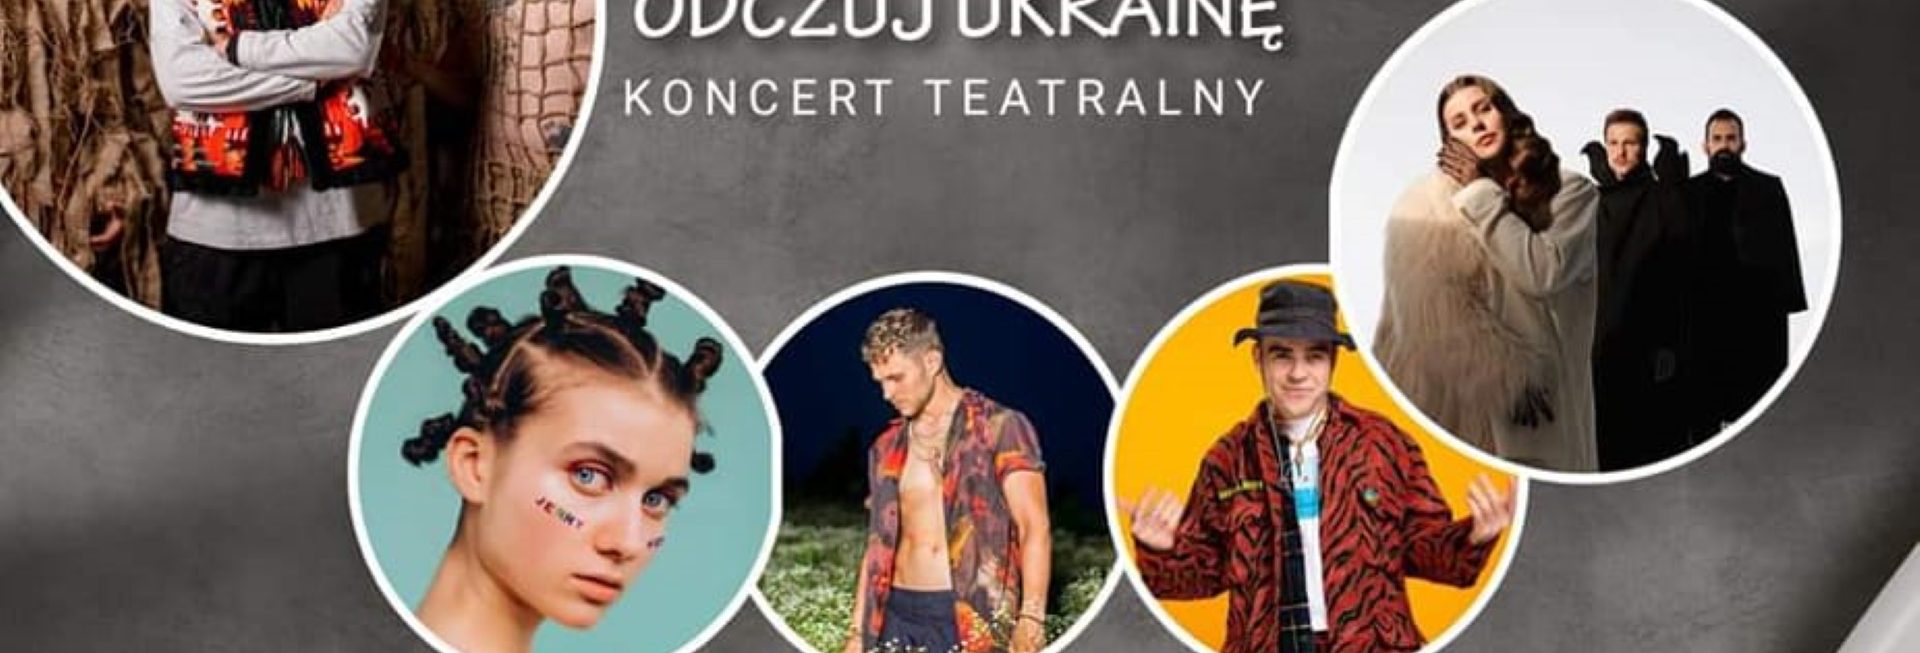 Plakat zapraszający do Mrągowa na teatralny koncert “Odczuj Ukrainę” Mrągowo 2022.